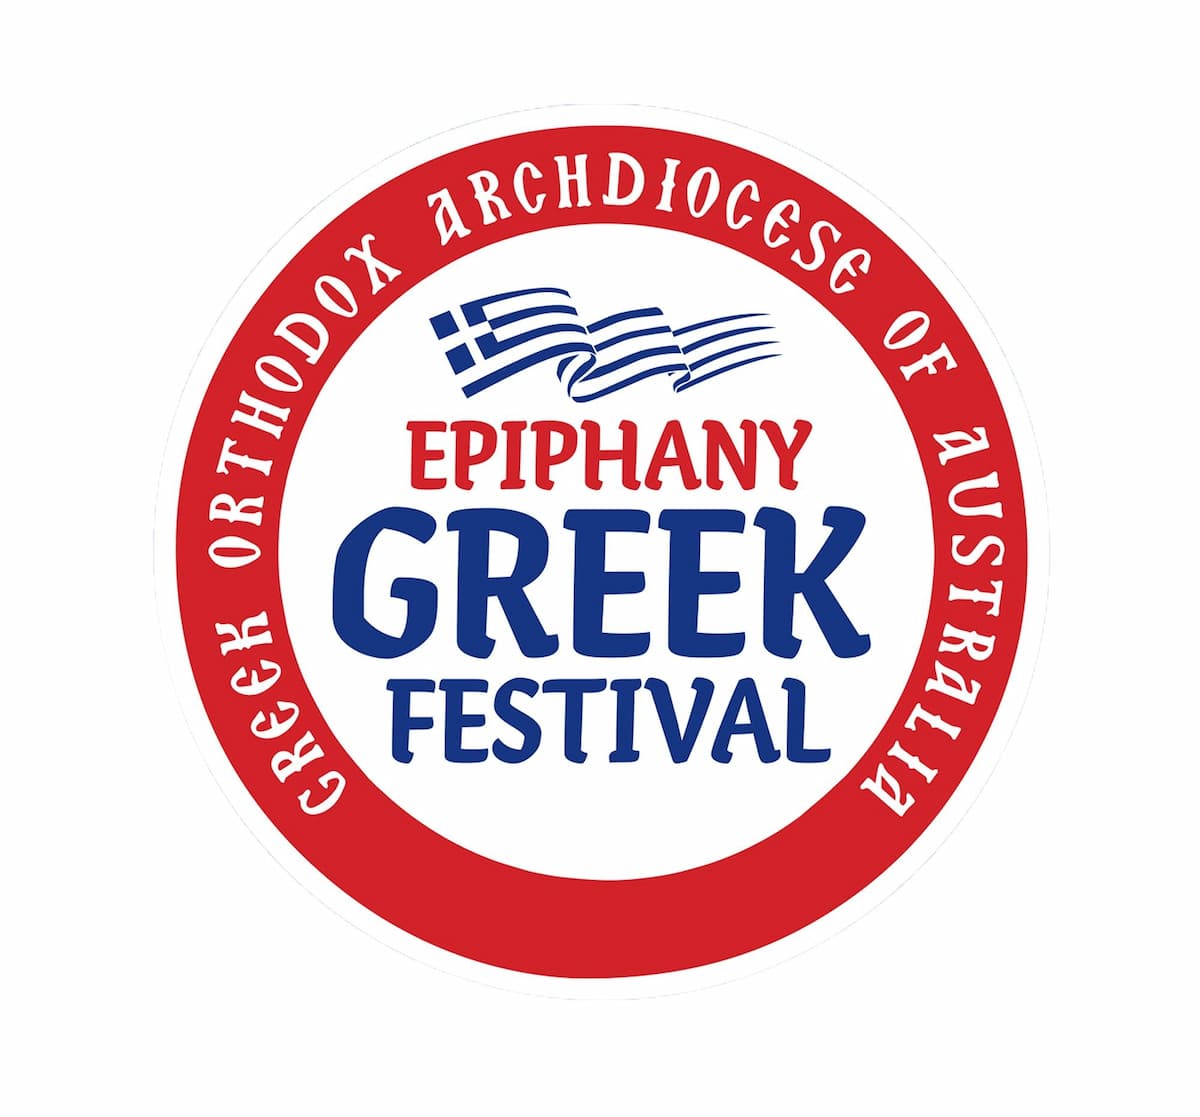 Epiphany Greek Festival Sydney